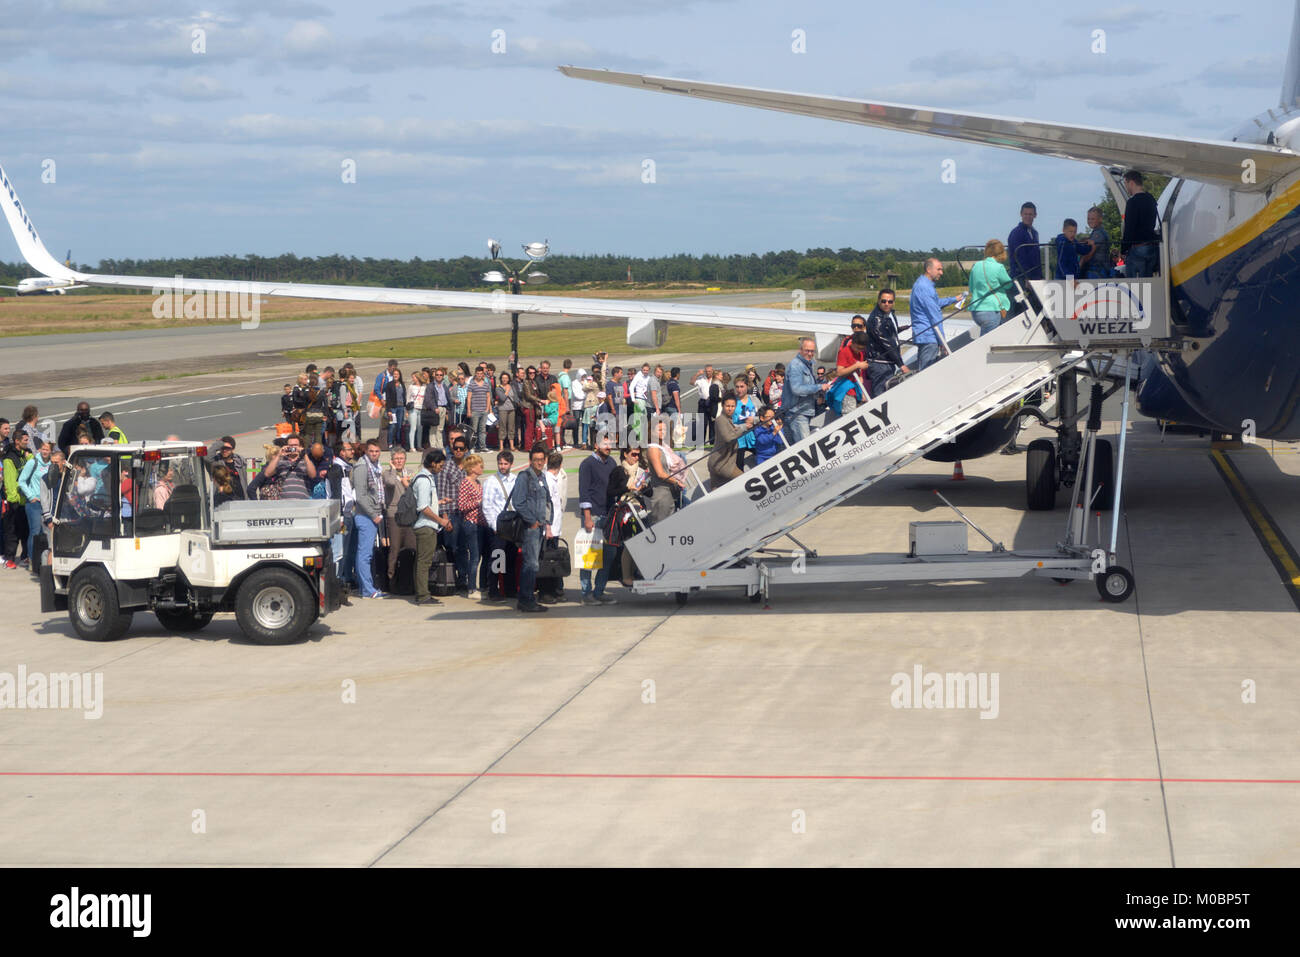 Weeze, Germania - 29 Giugno 2013: persone in attesa nella coda durante l'imbarco per l'aereo Ryanair in Weeze aeroporto, Germania il 29 giugno 2013. Ryanair w Foto Stock